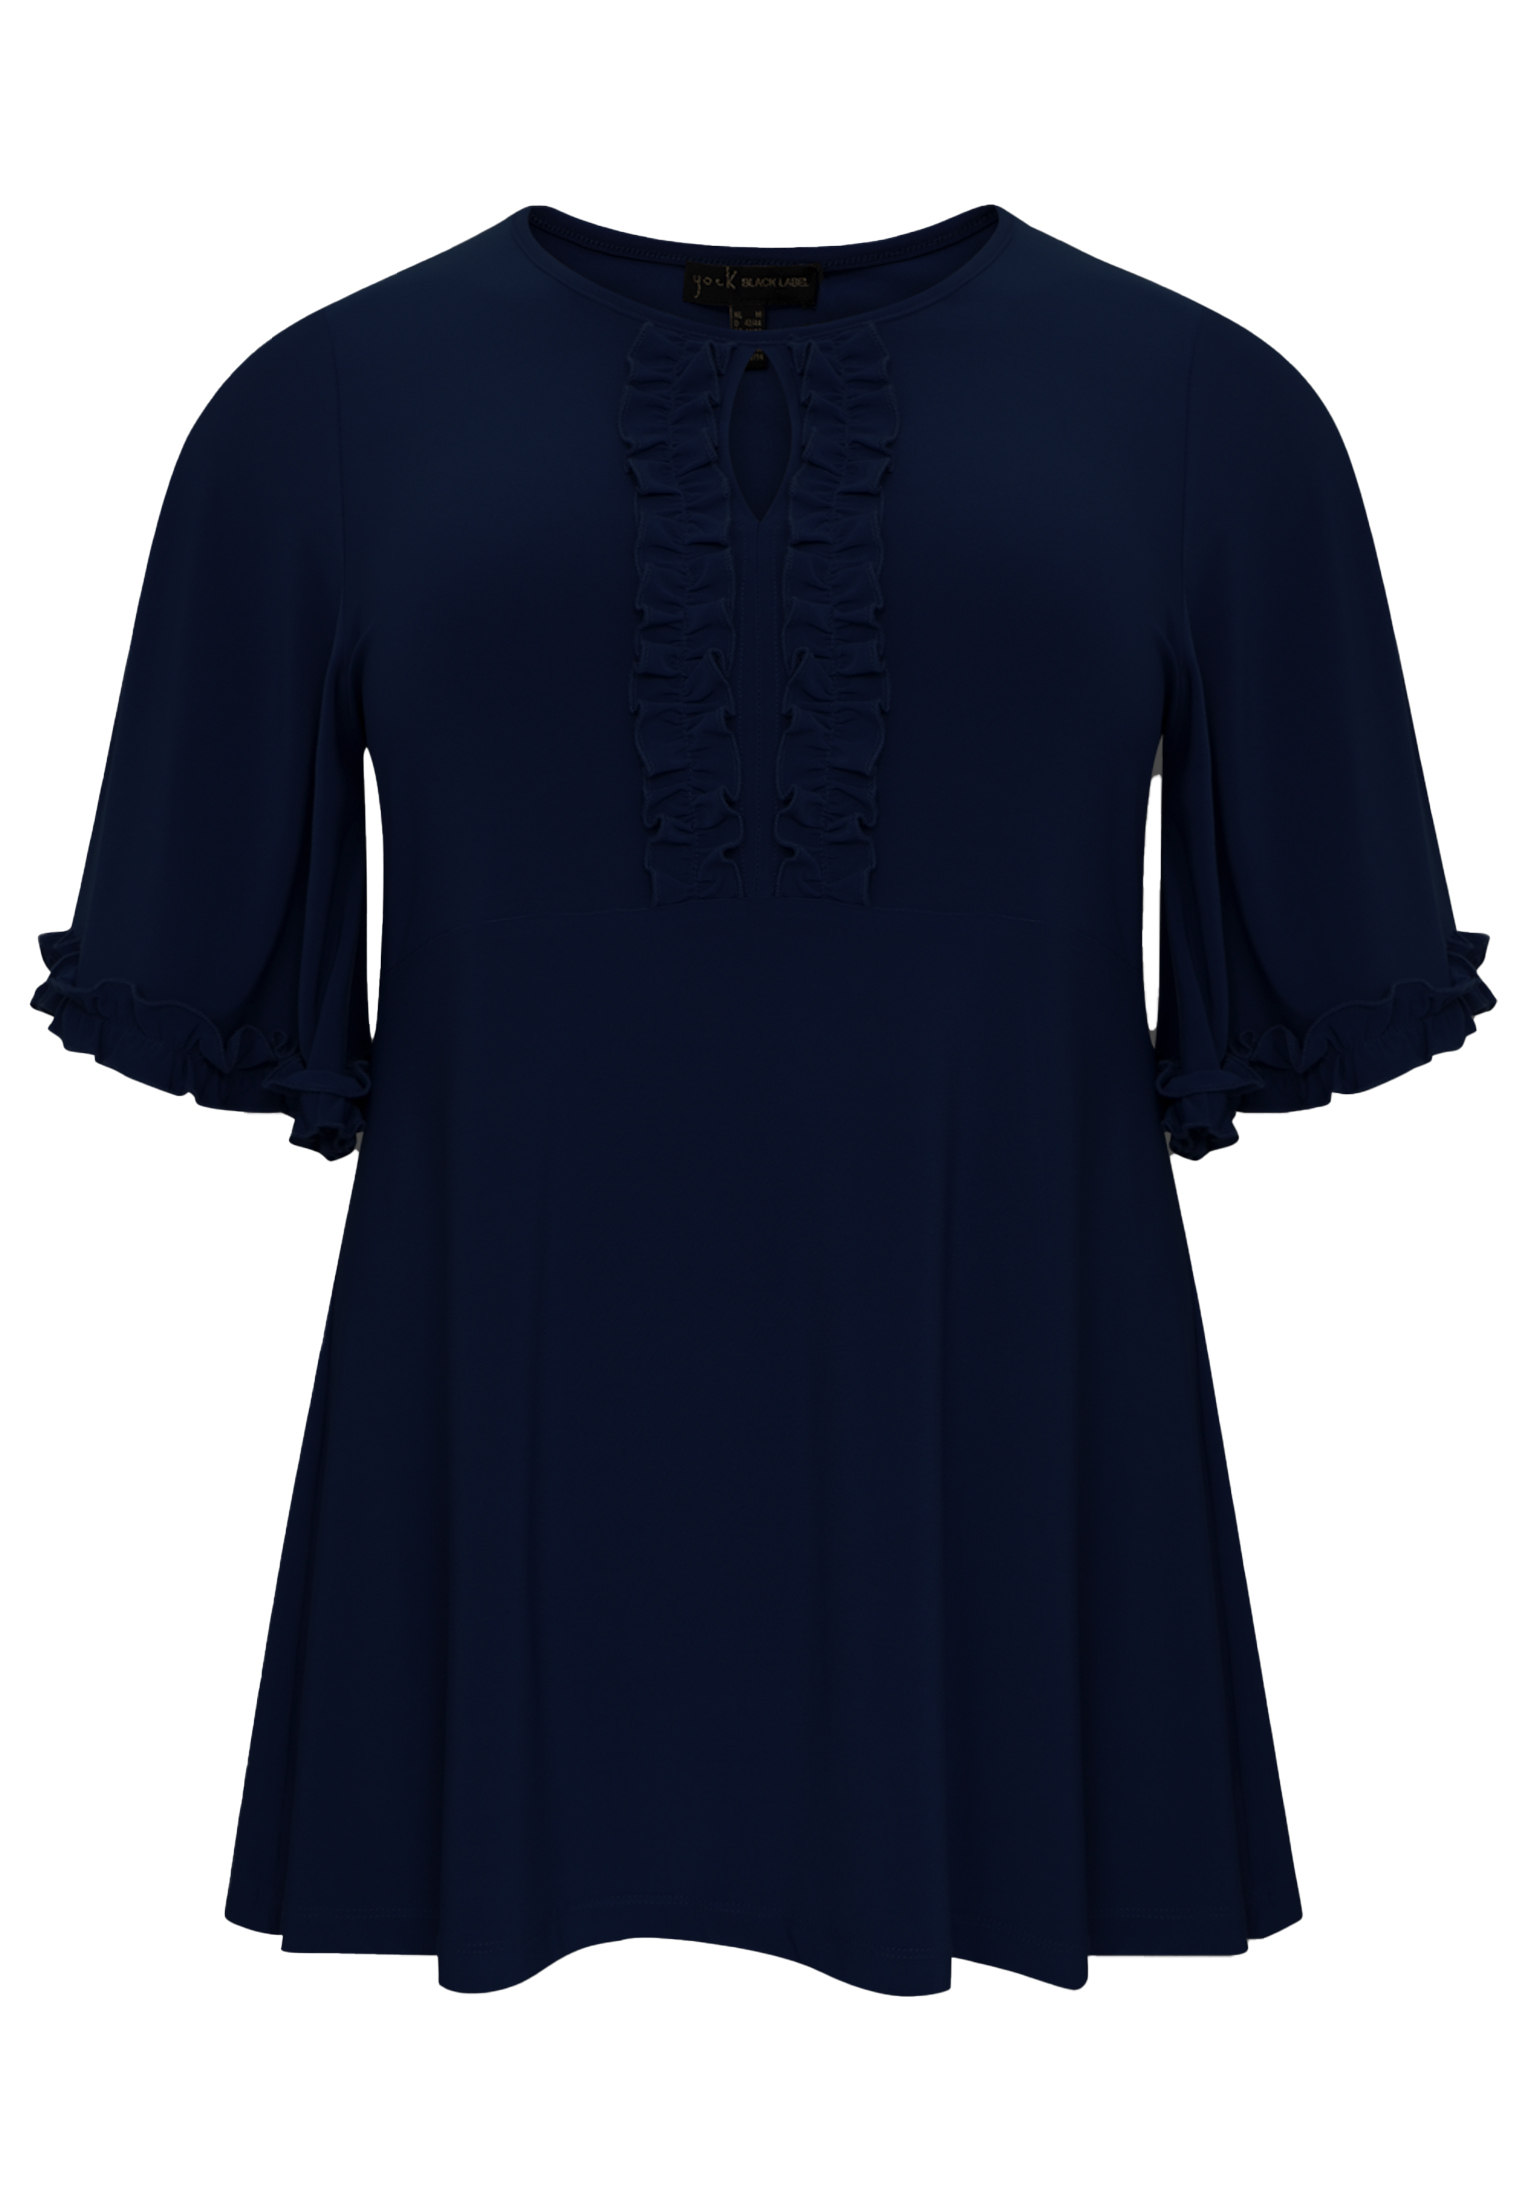 Tunic flare frilled sleeves DOLCE - black blue indigo